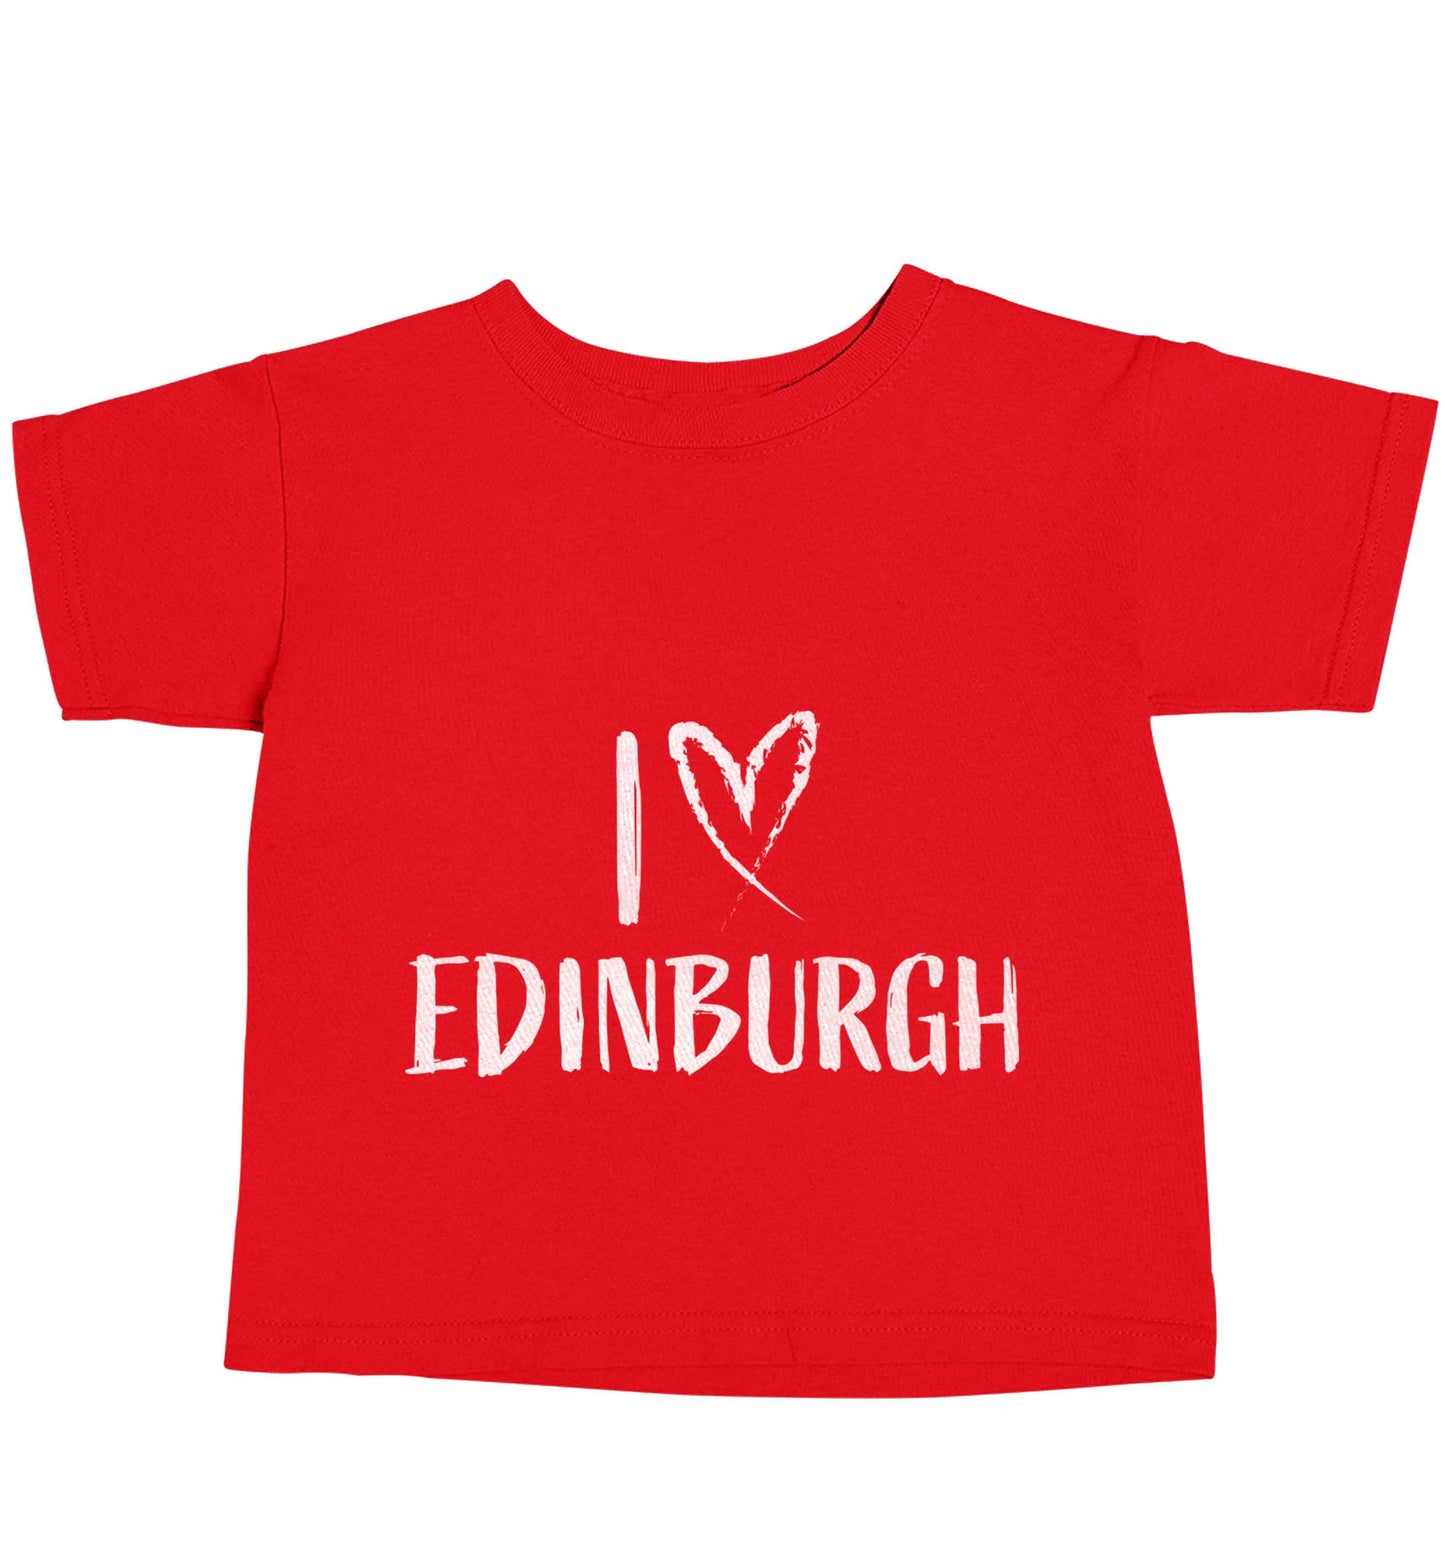 I love Edinburgh red baby toddler Tshirt 2 Years